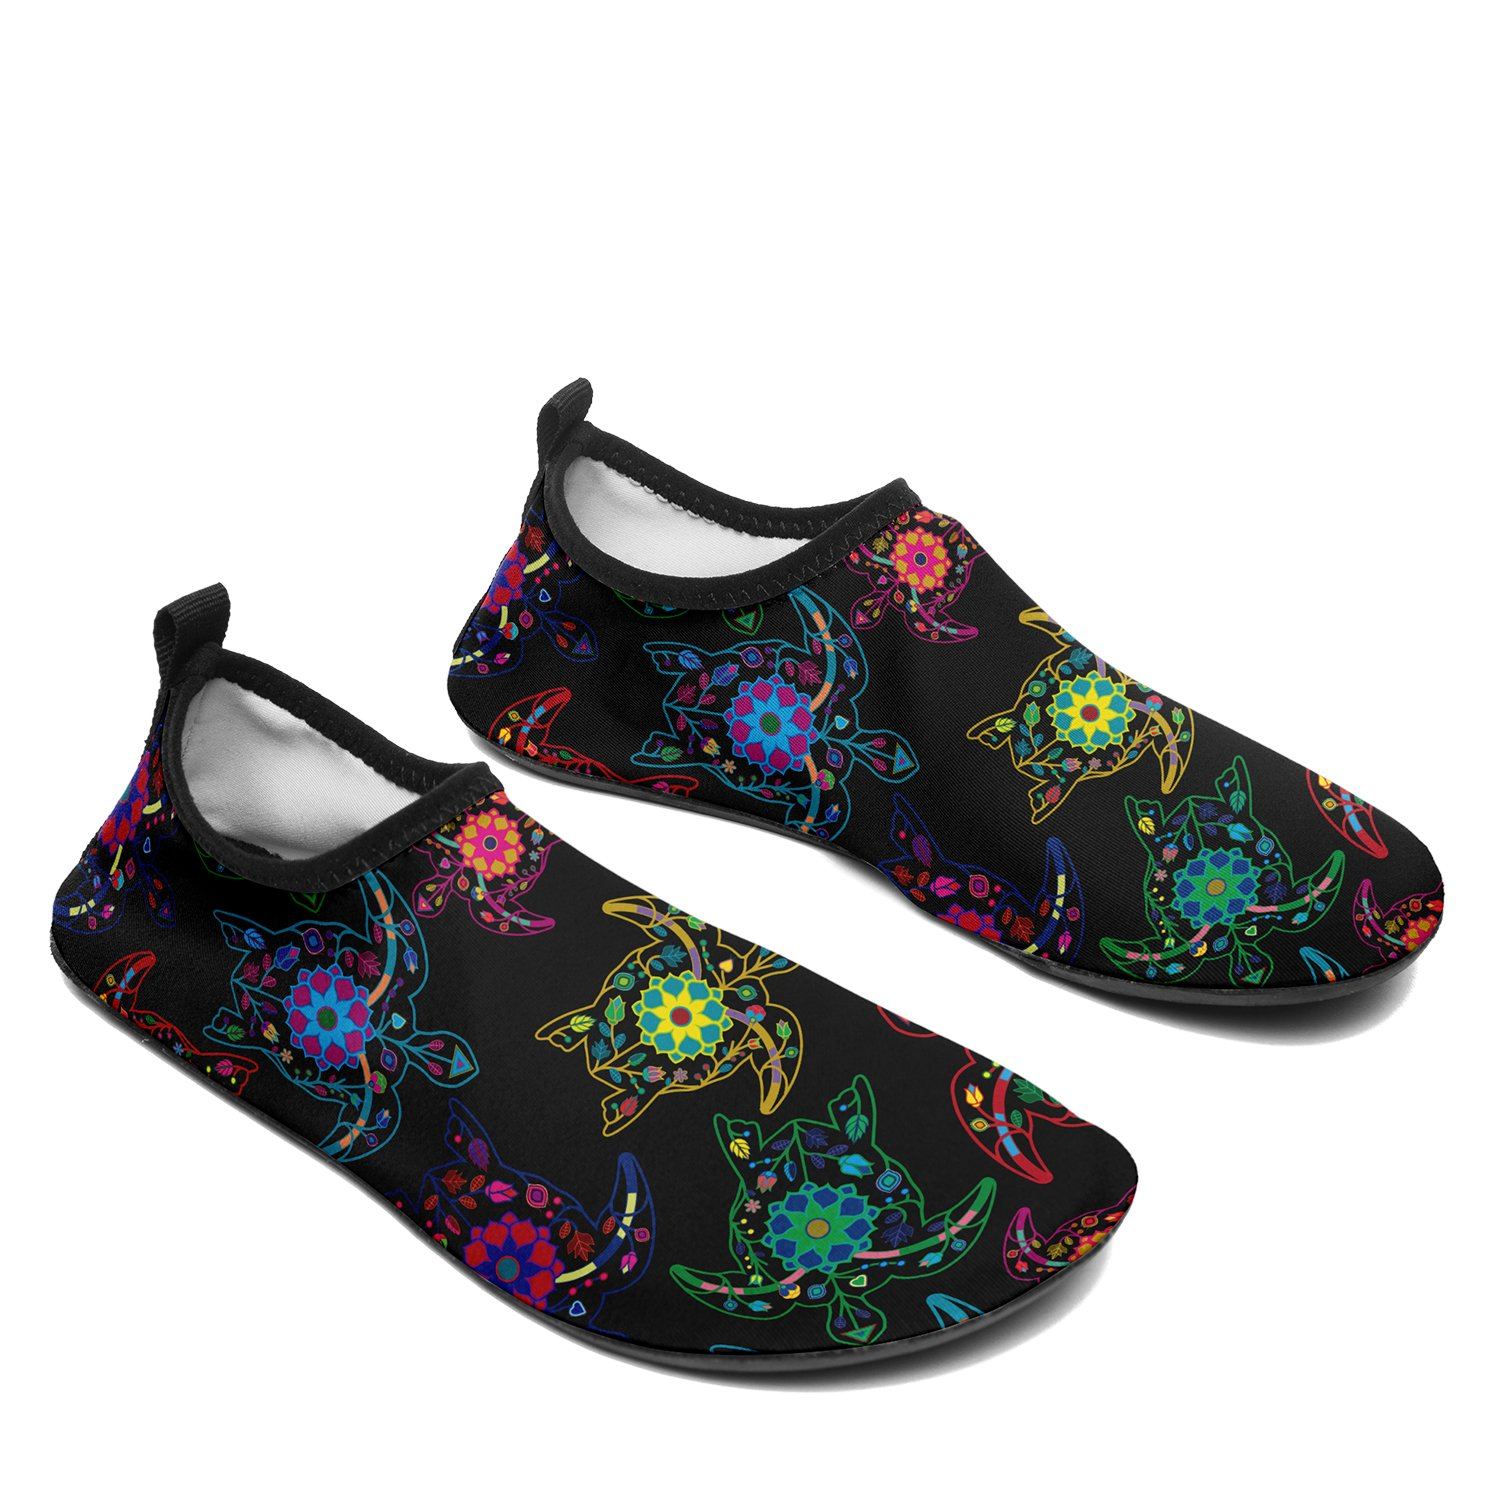 Floral Turtle Sockamoccs Slip On Shoes Herman 